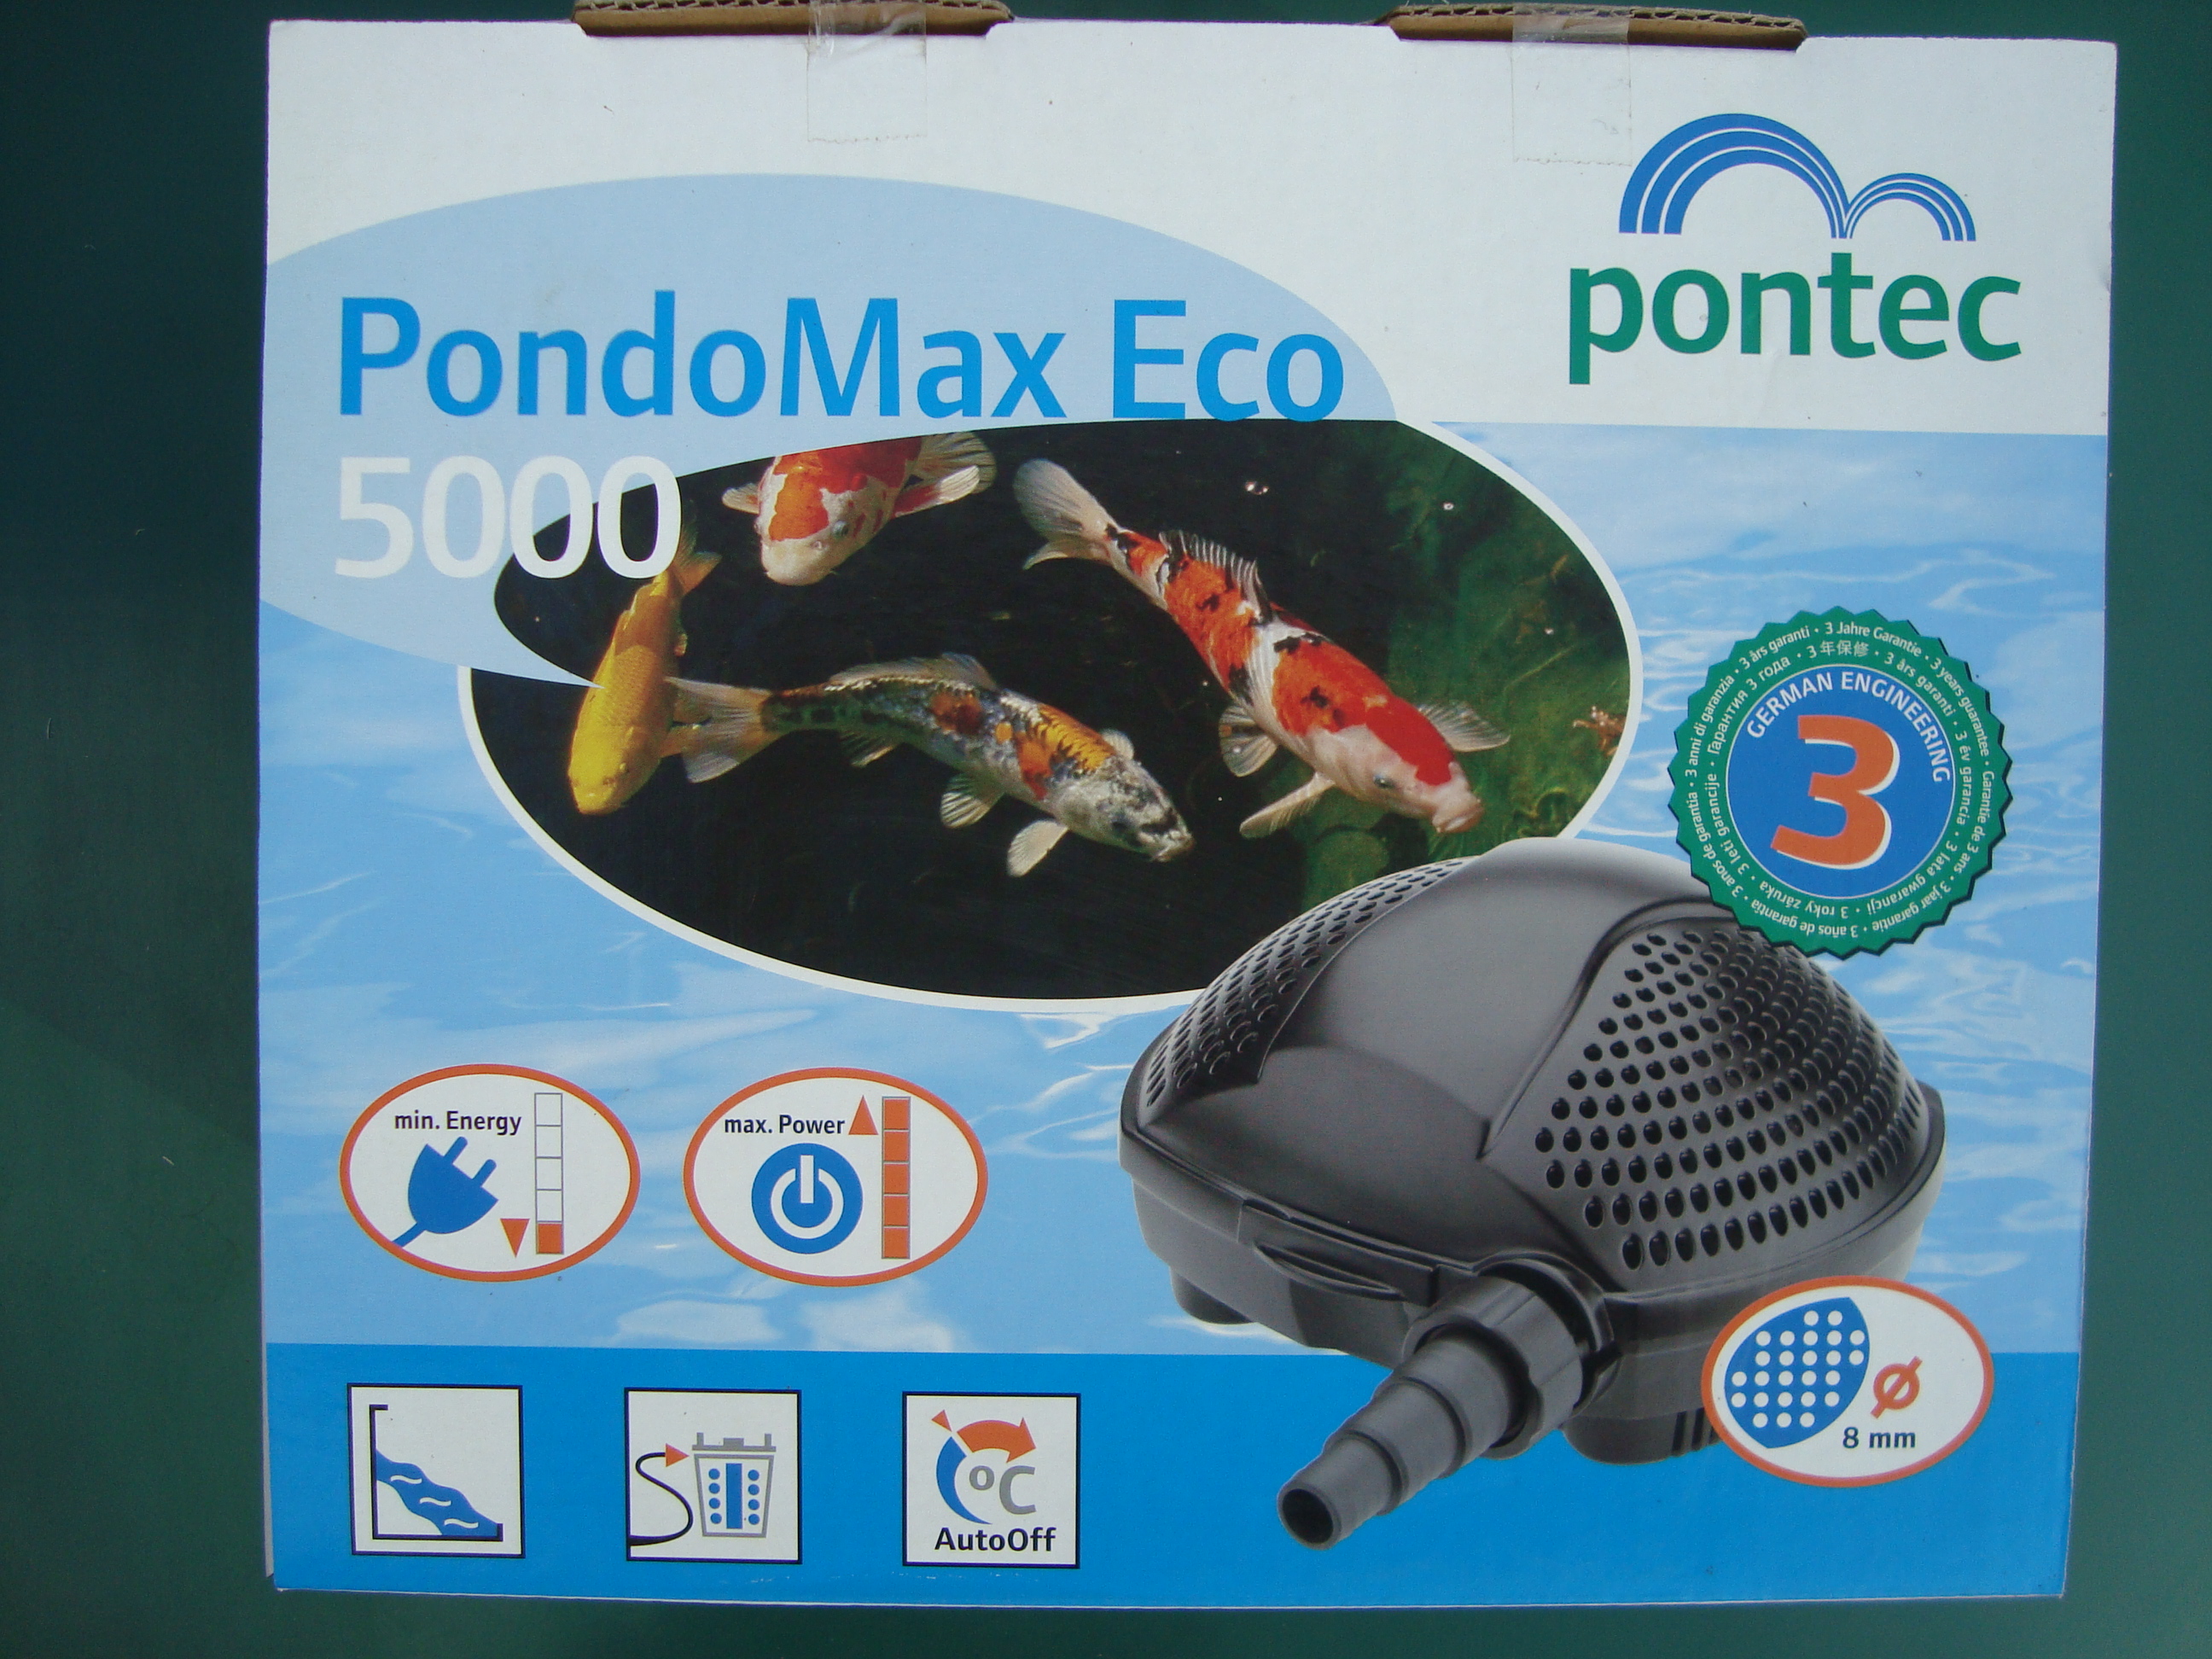 Jazierkové čerpadlo Pontec Pondomax Eco 5000 cena 113.- s DPH